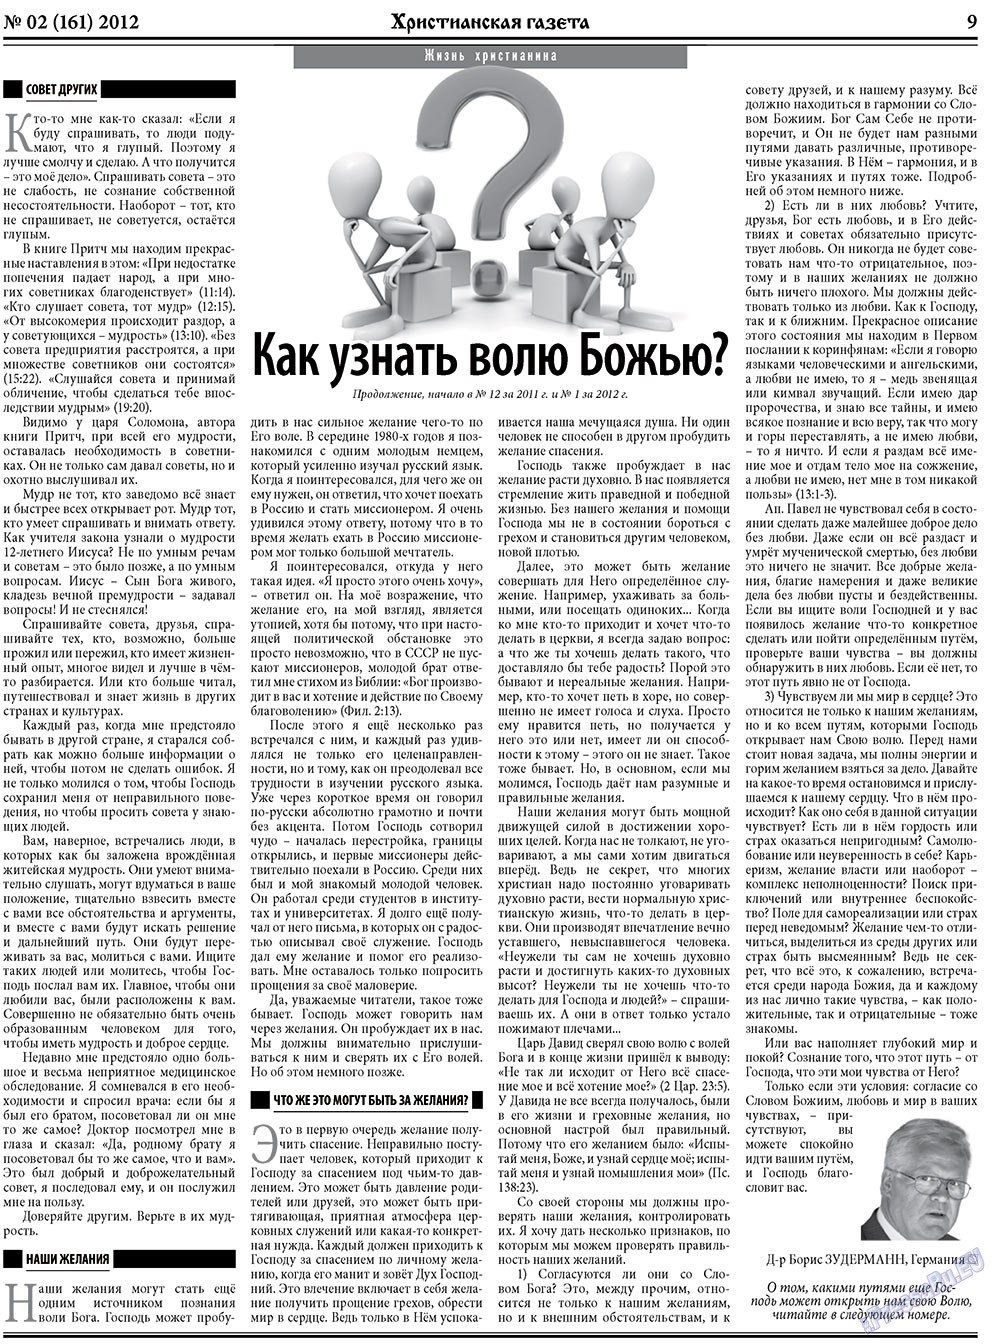 Христианская газета (газета). 2012 год, номер 2, стр. 9